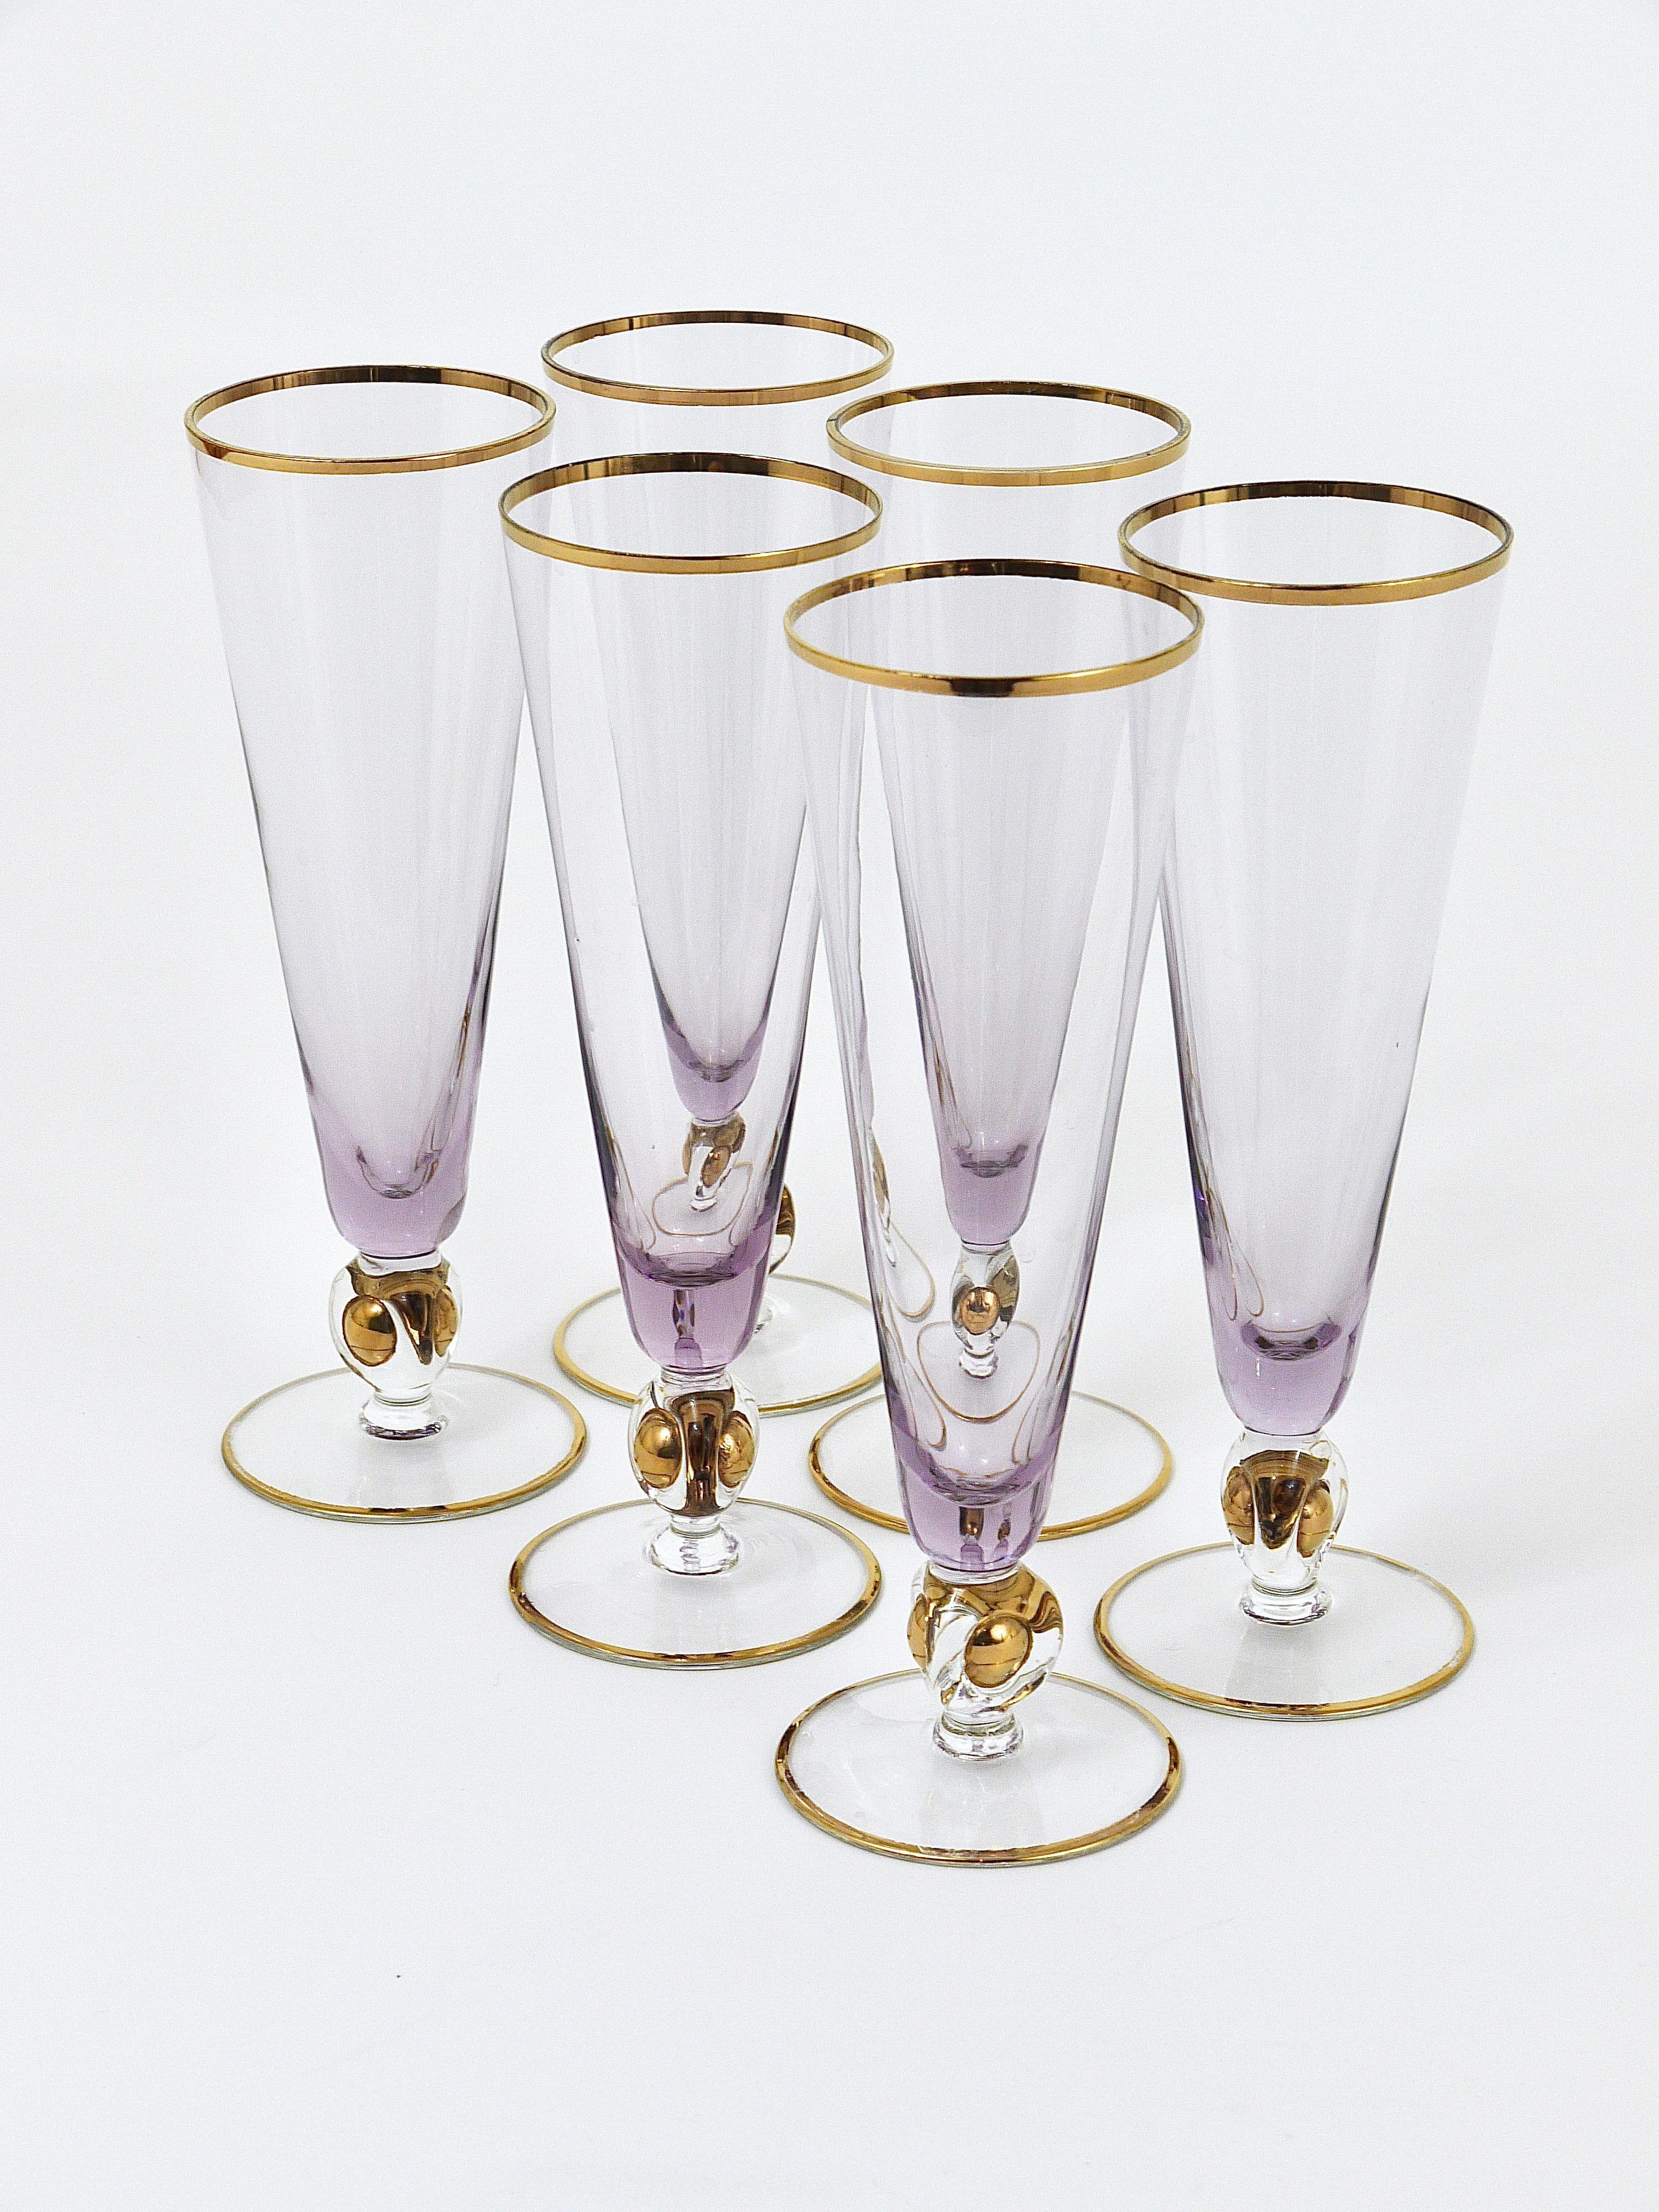 Faceted Ball Champagne Flute Set of 4 Vintage Champagne Glasses Vintage Barware